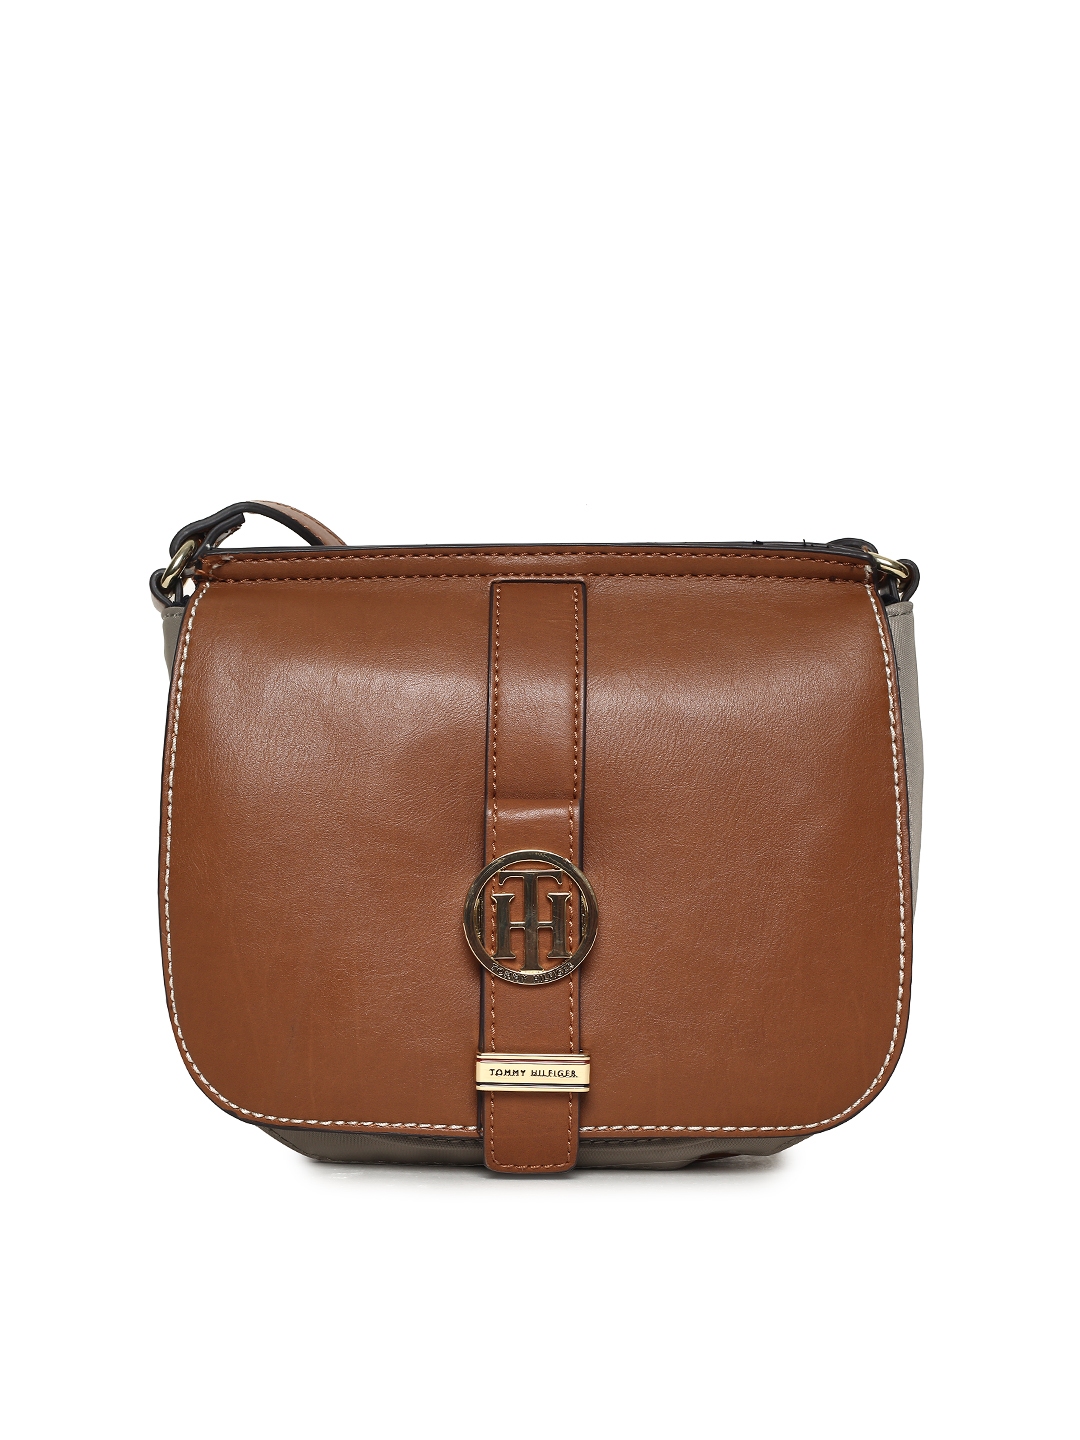 tommy hilfiger brown leather bag